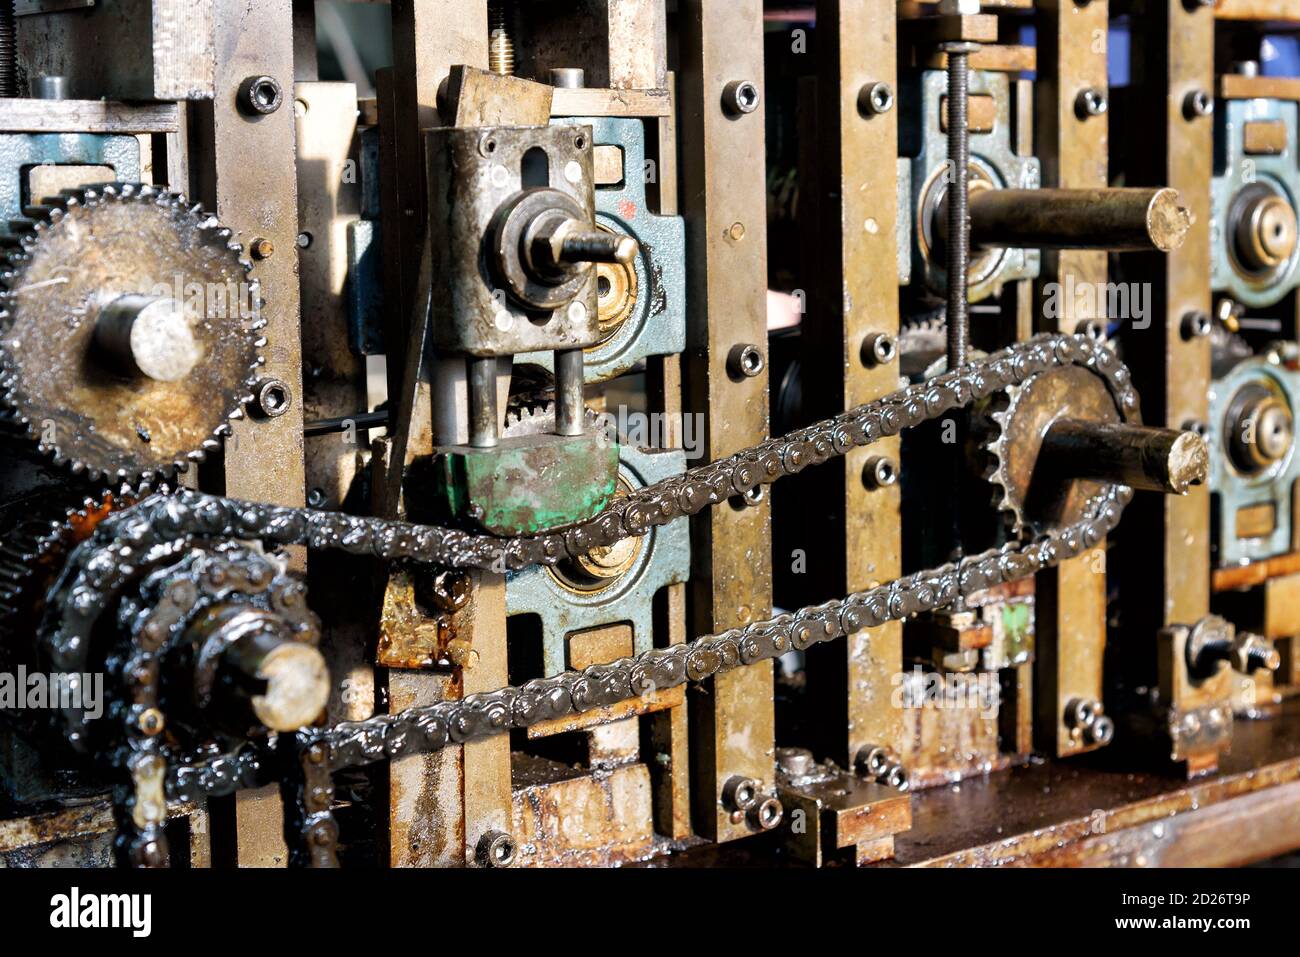 Primo piano sulla catena di trasmissione dei macchinari industriali che  mostra la catena e gli ingranaggi per la trasmissione della potenza Foto  stock - Alamy